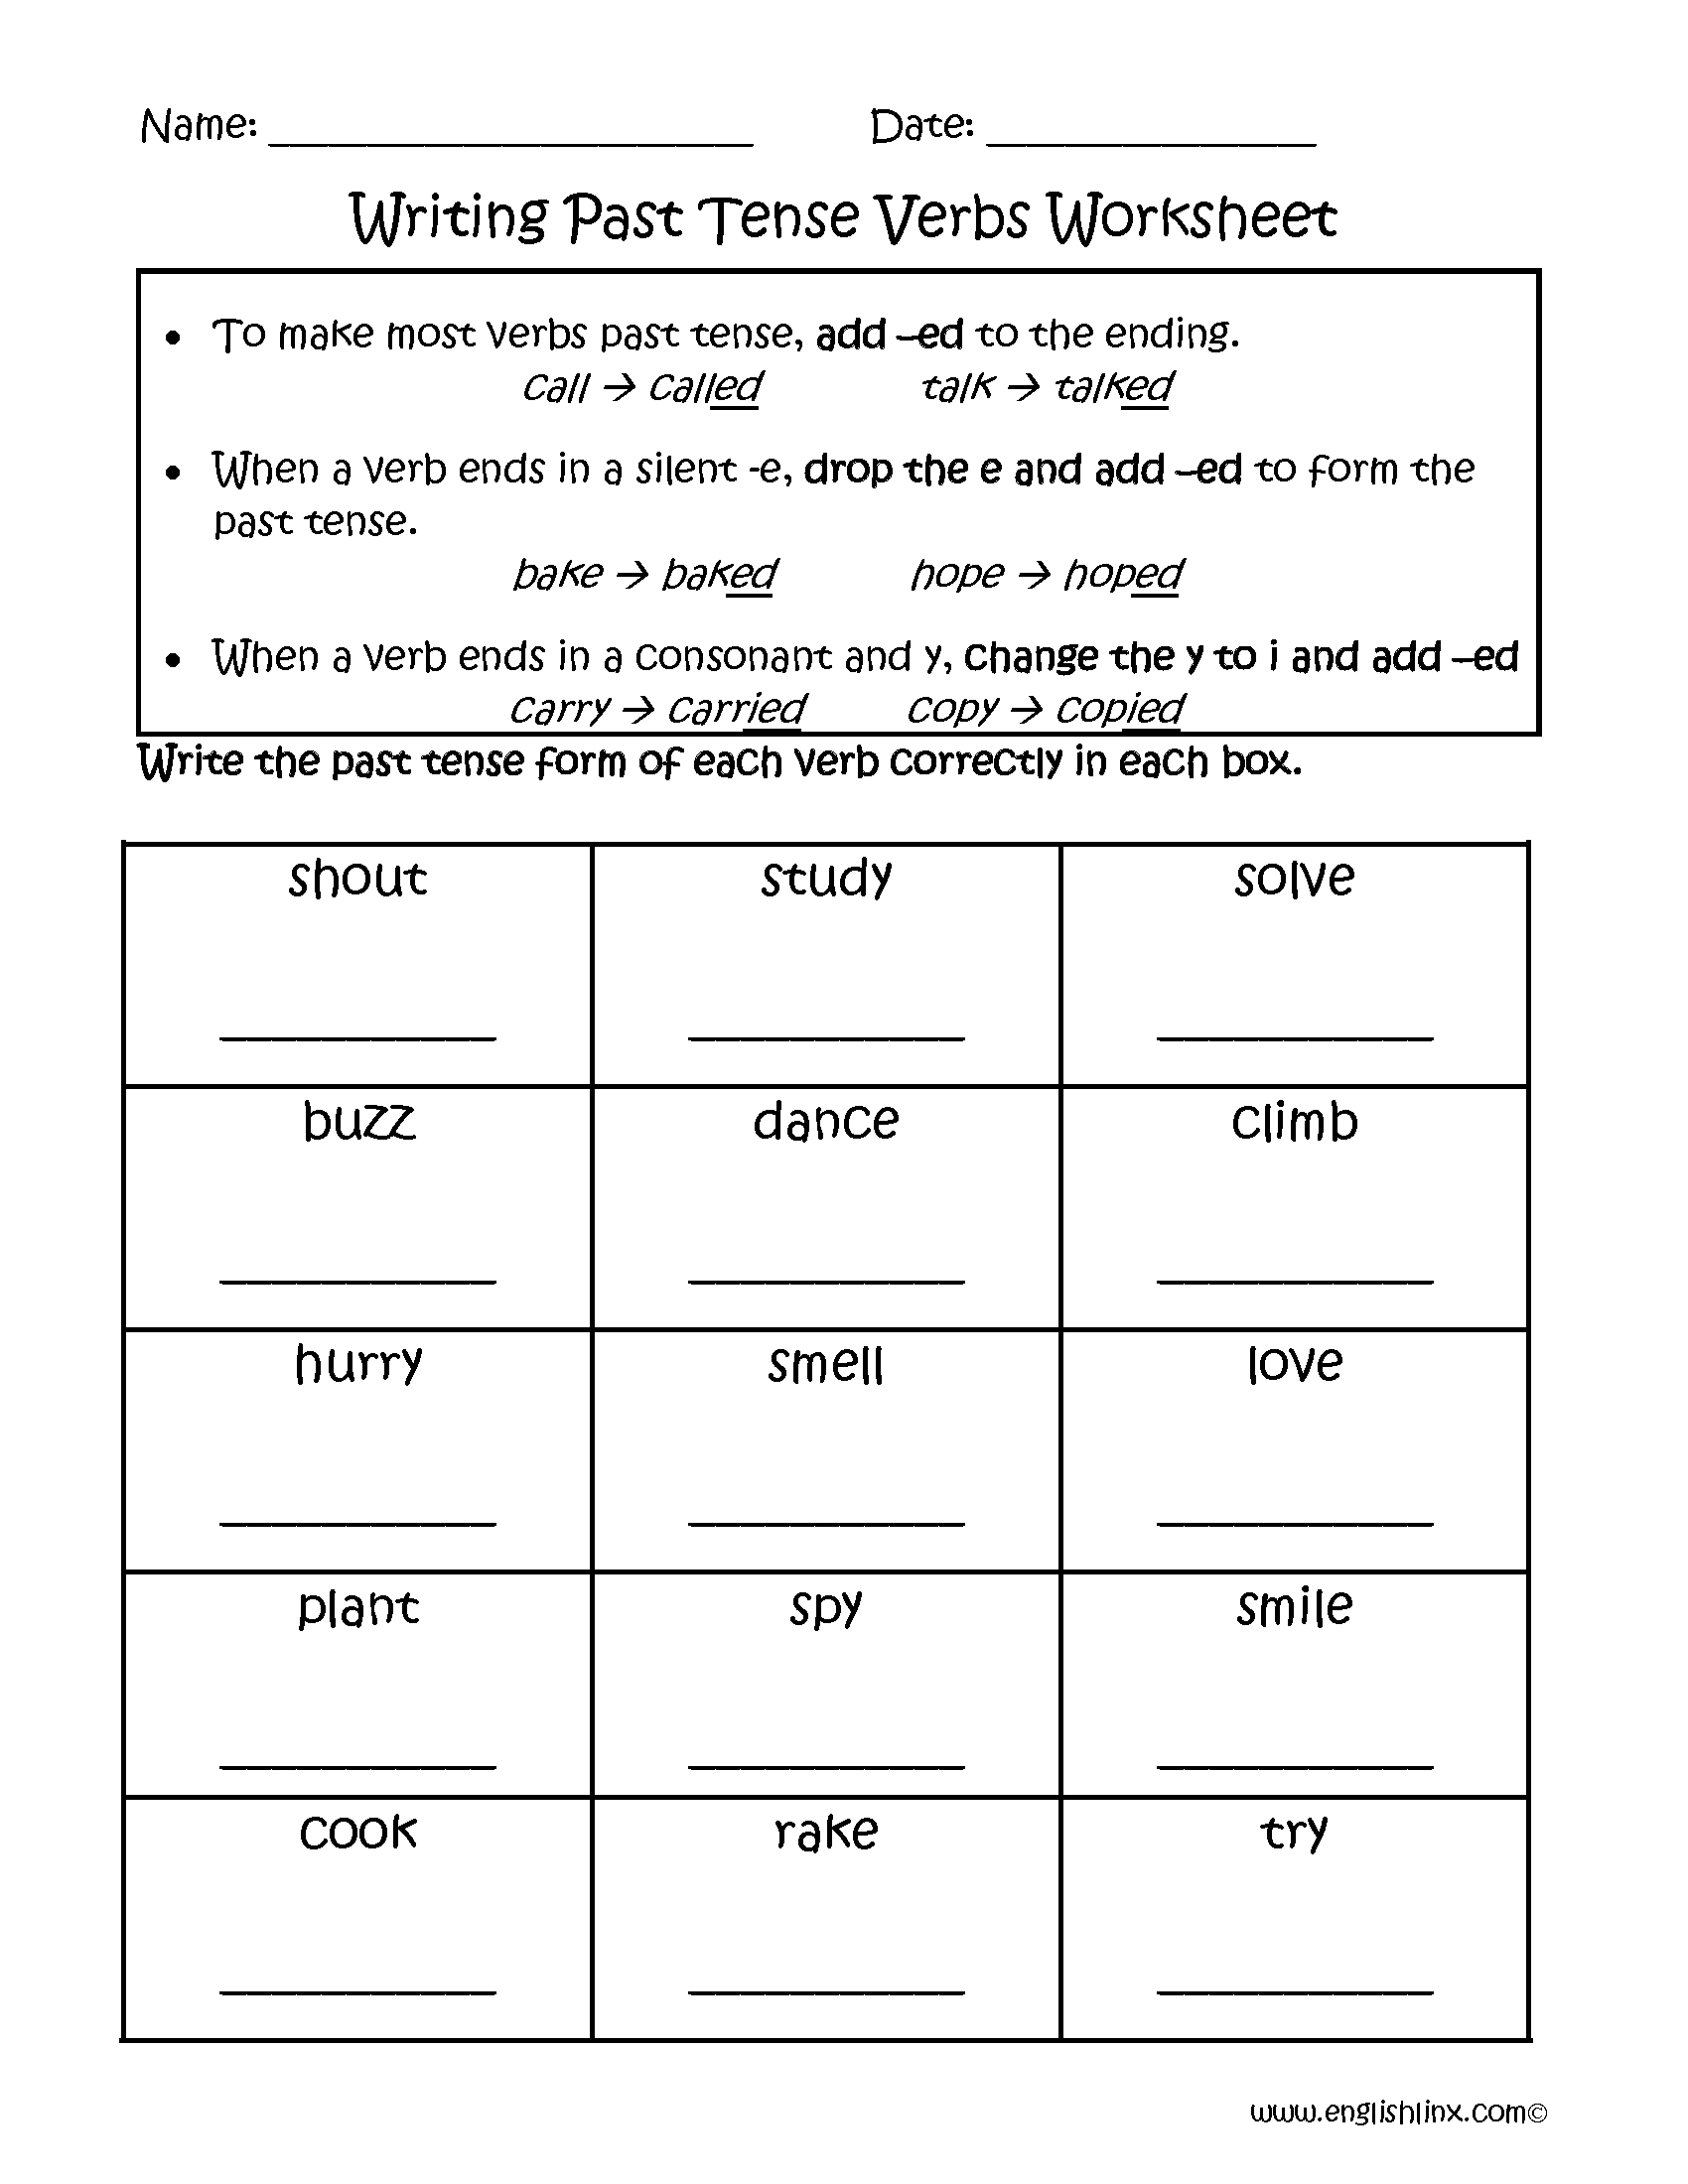 verb-worksheets-1st-grade-db-excel